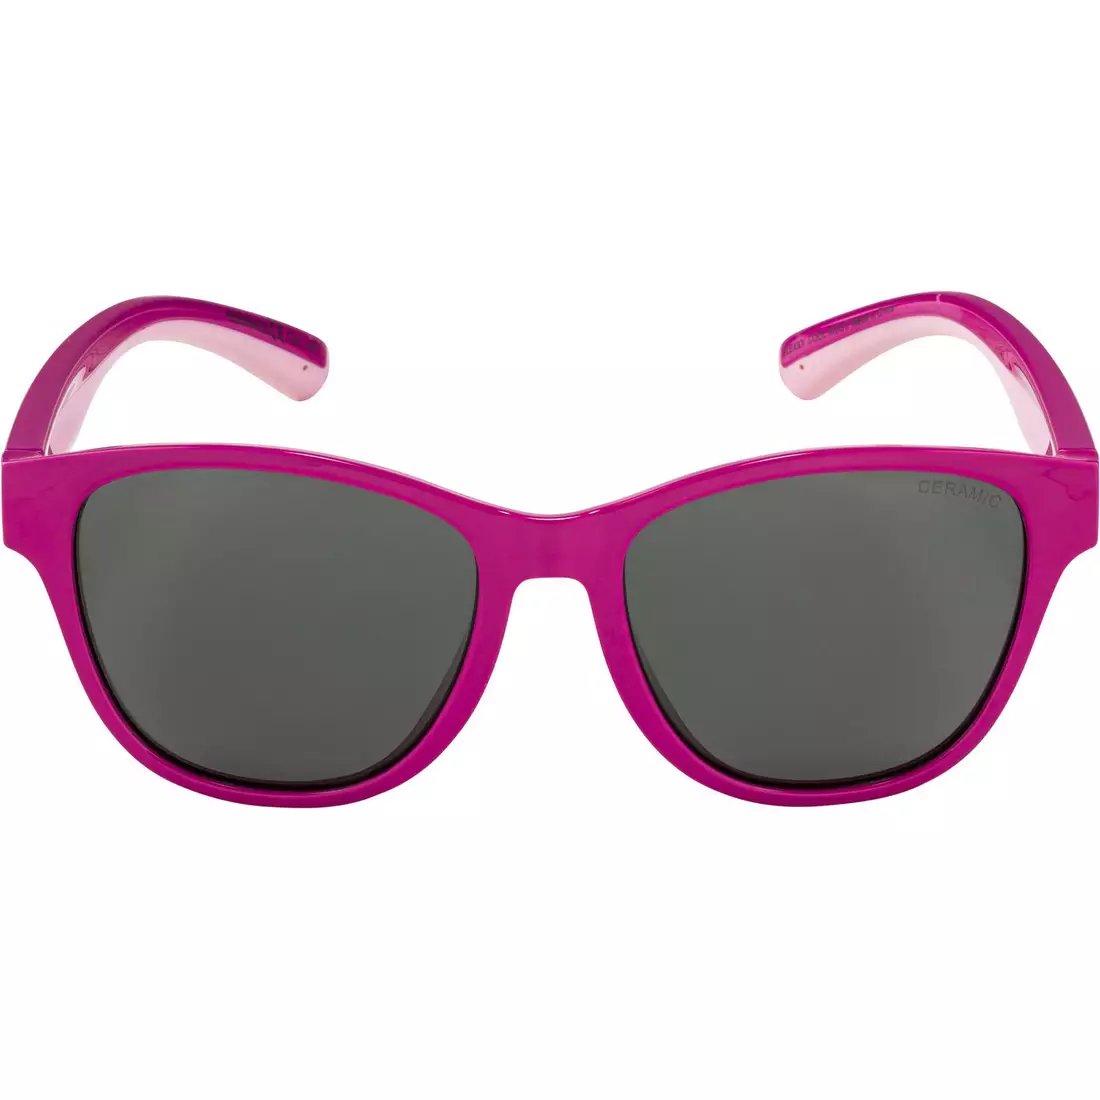 ALPINA FLEXXY COOL KIDS II Fahrrad-/Sportbrille für Kinder, pink-rose gloss